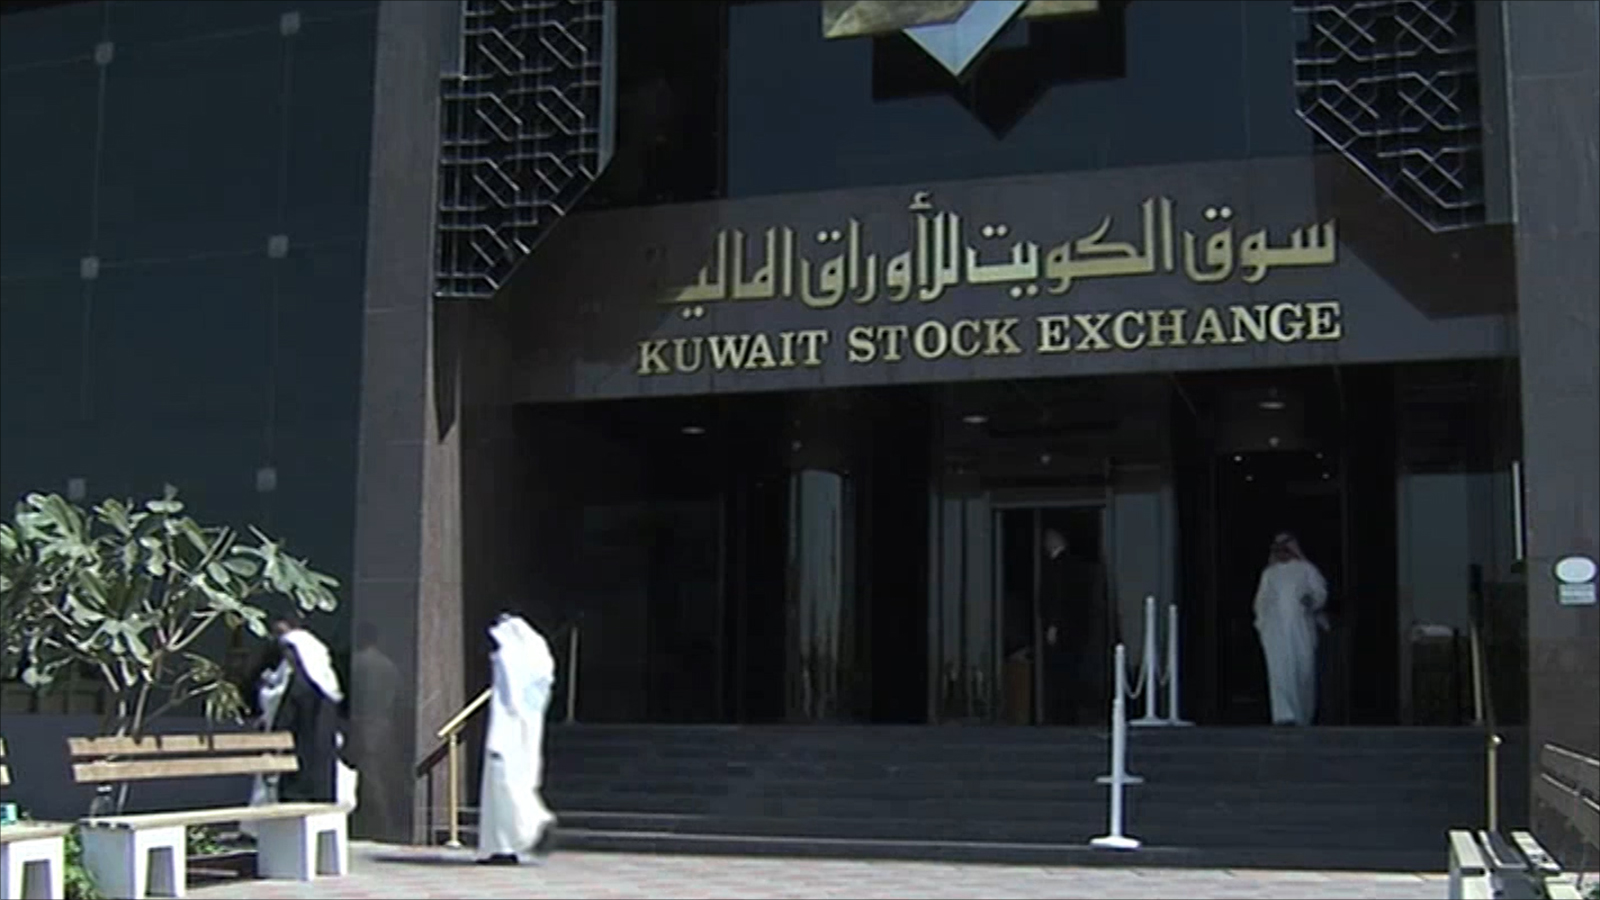 ‪أصول الصندوق السيادي الكويتي تبلغ 592 مليار دولار (الجزيرة)‬ أصول الصندوق السيادي الكويتي تبلغ 592 مليار دولار (الجزيرة)